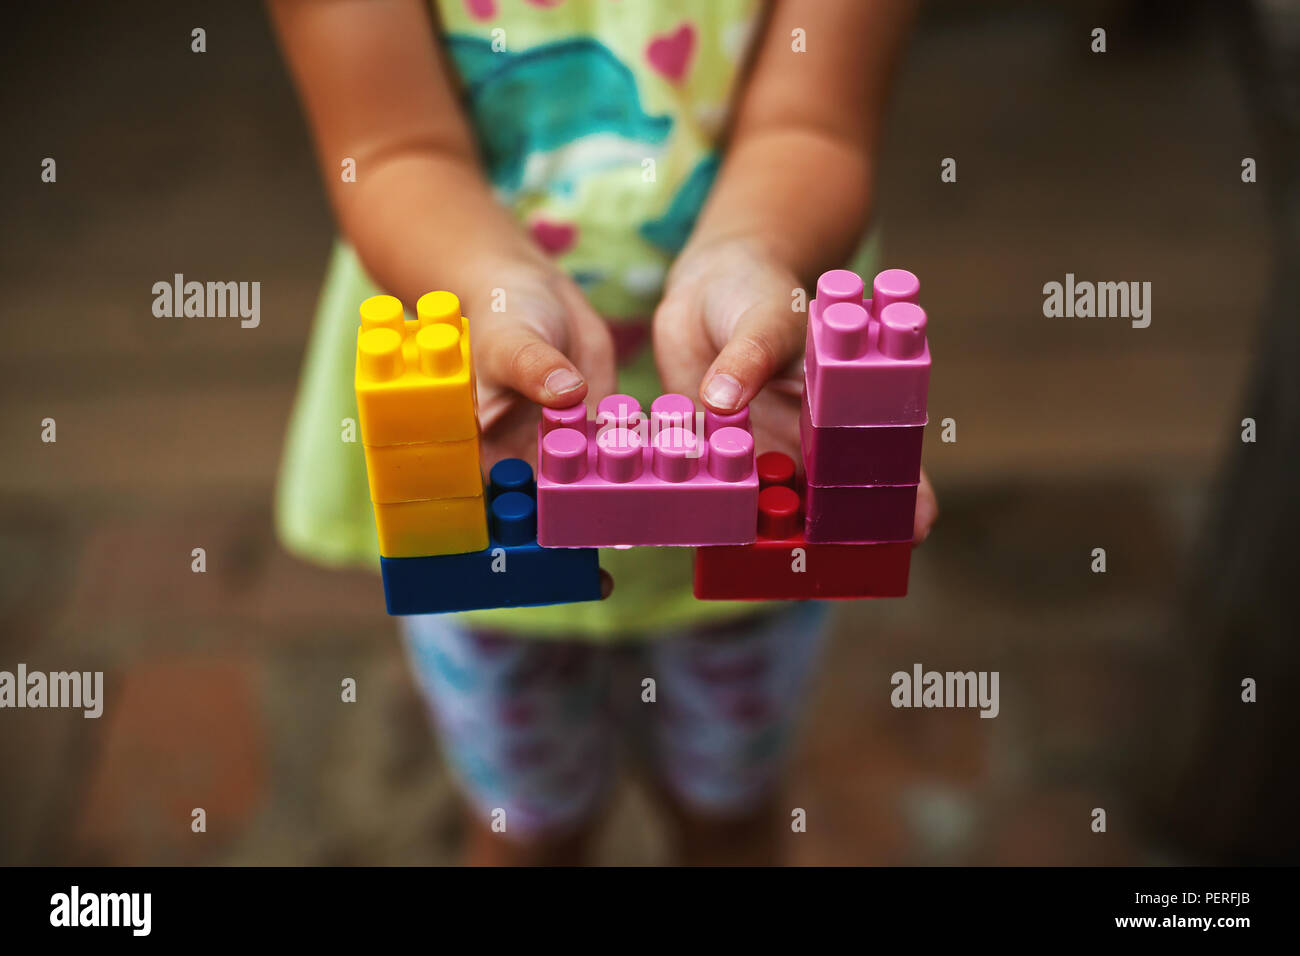 Un bambino piccolo è azienda giocattoli colorati, che mostra la creatività. Foto Stock